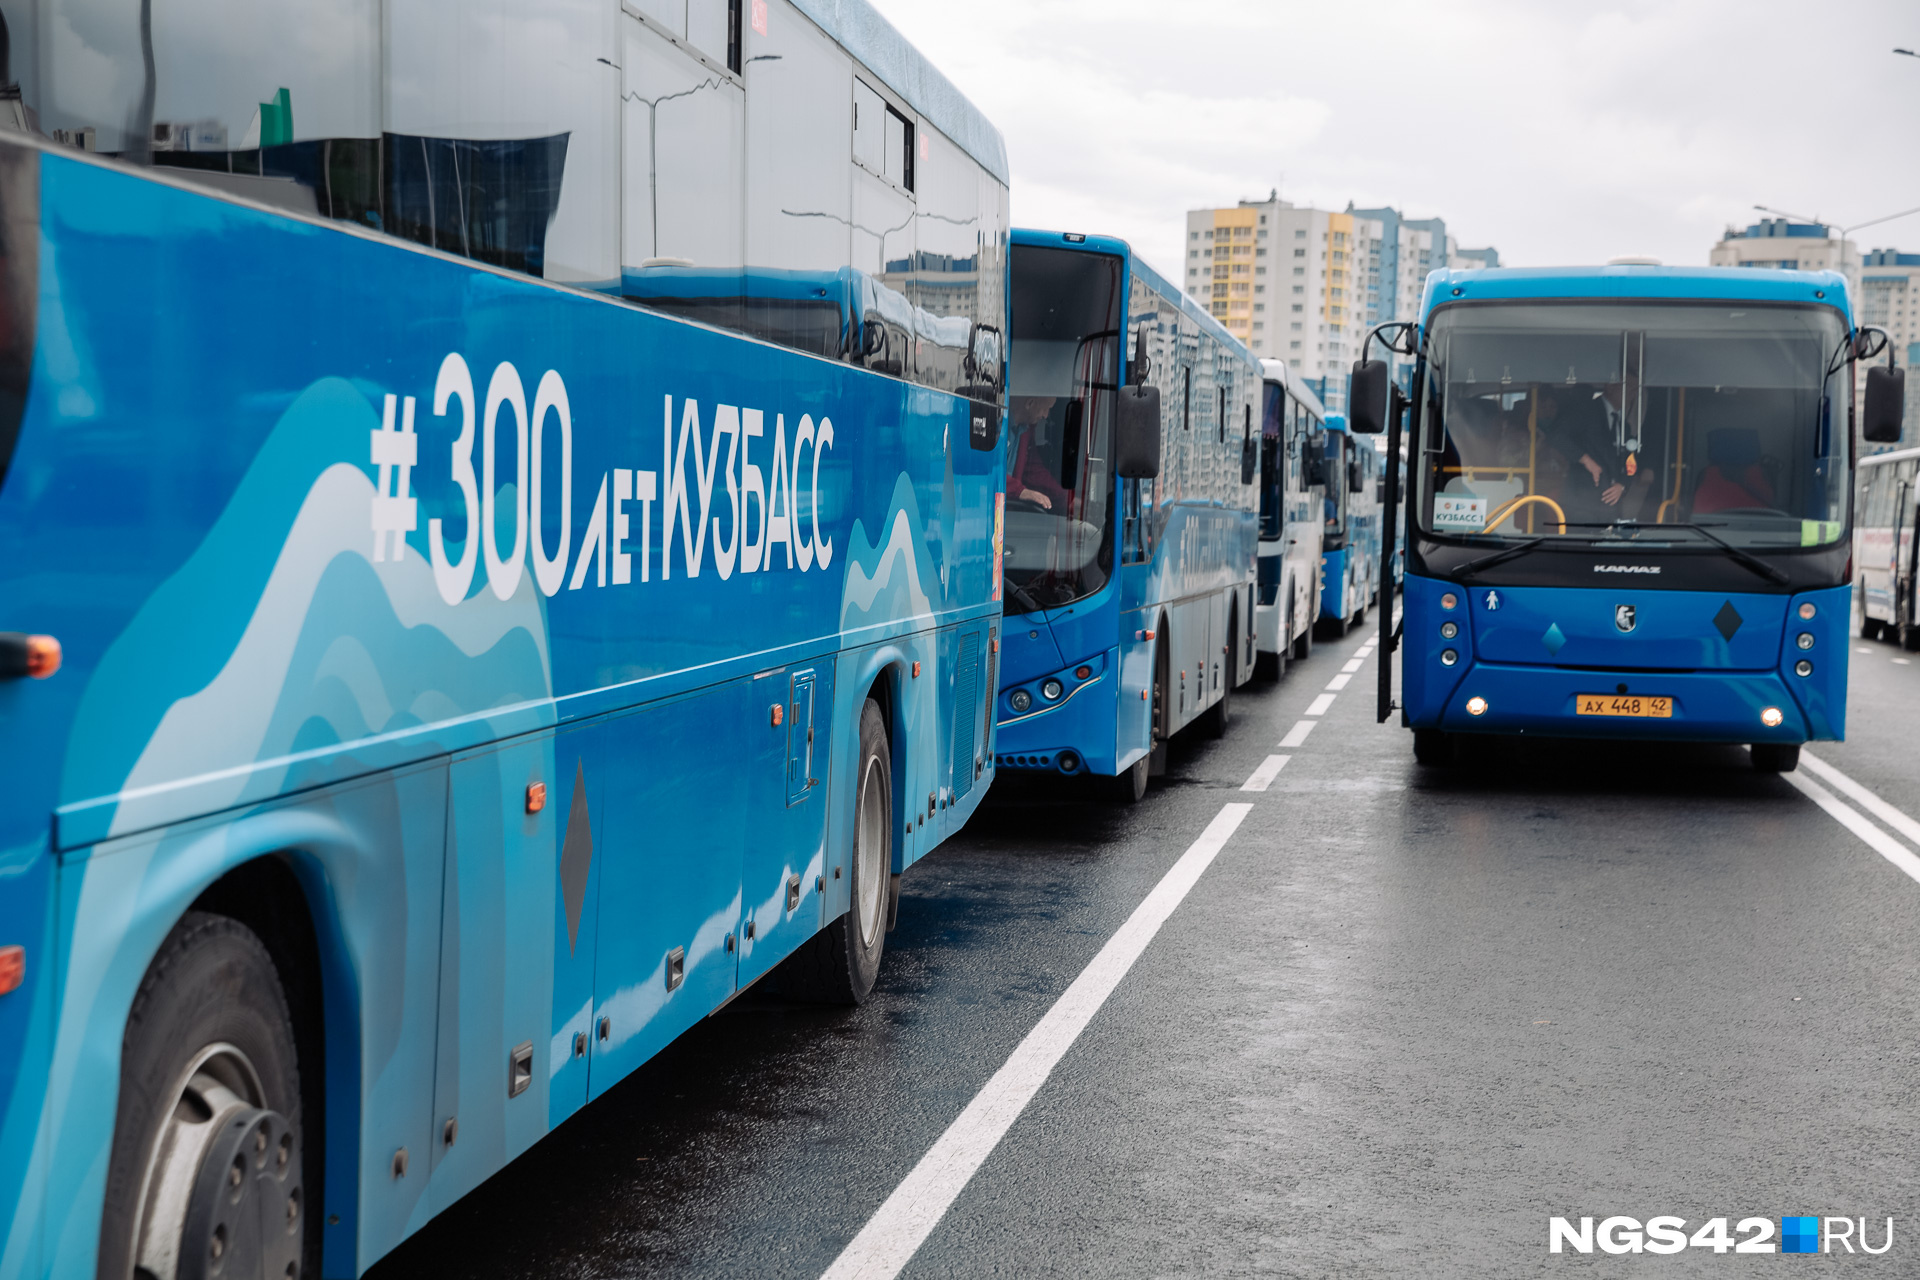 Десять дополнительных автобусных маршрутов начнут работать в Новокузнецке